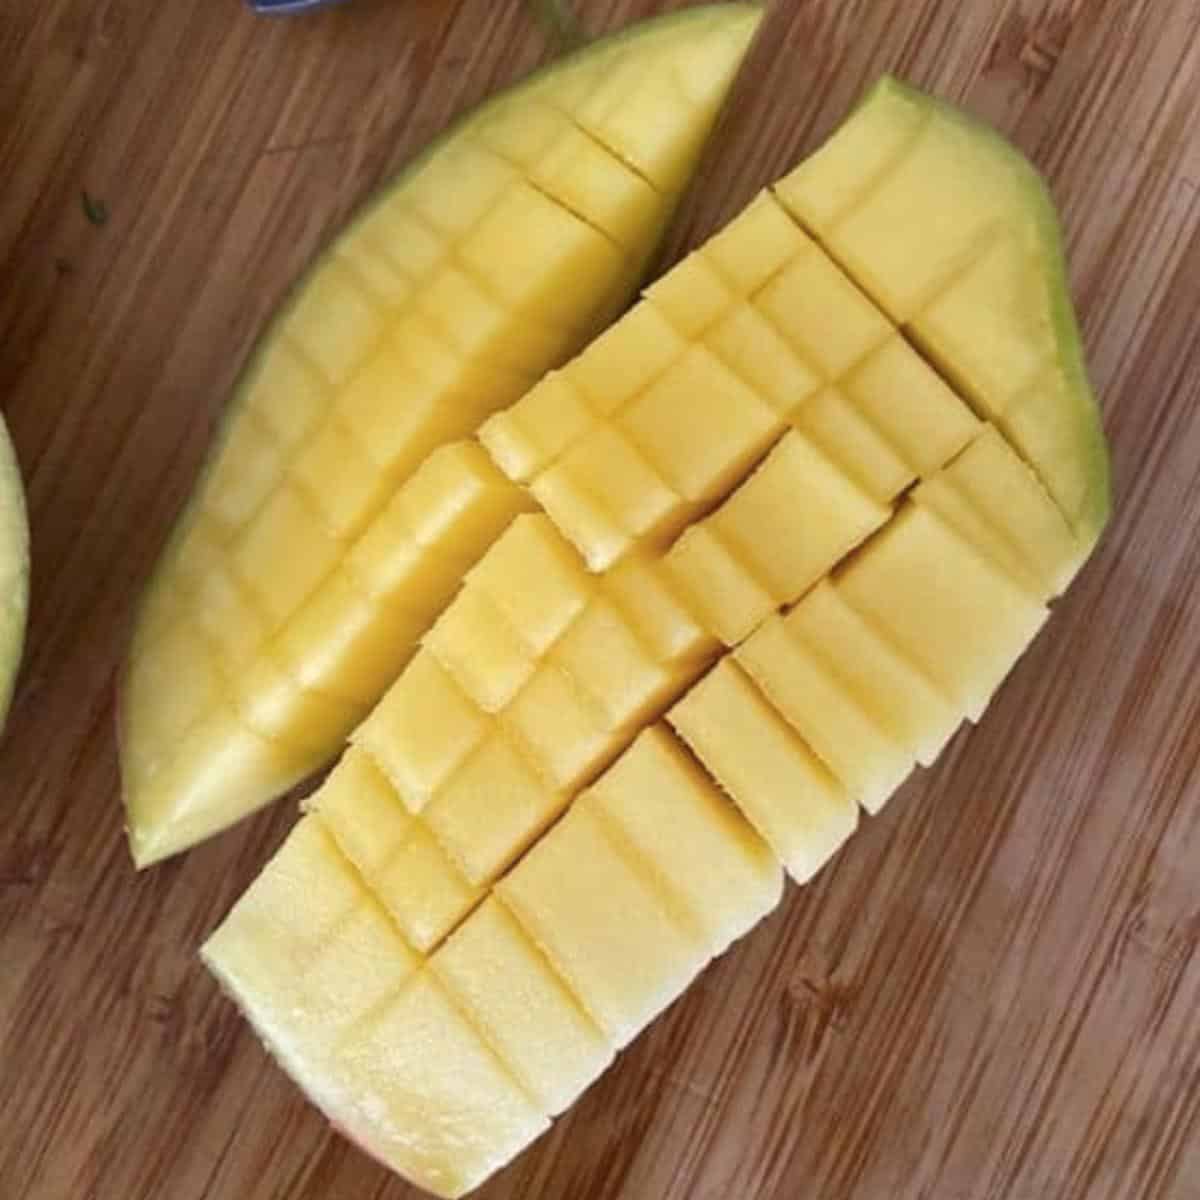 Mango cut with gridlines on cutting board.